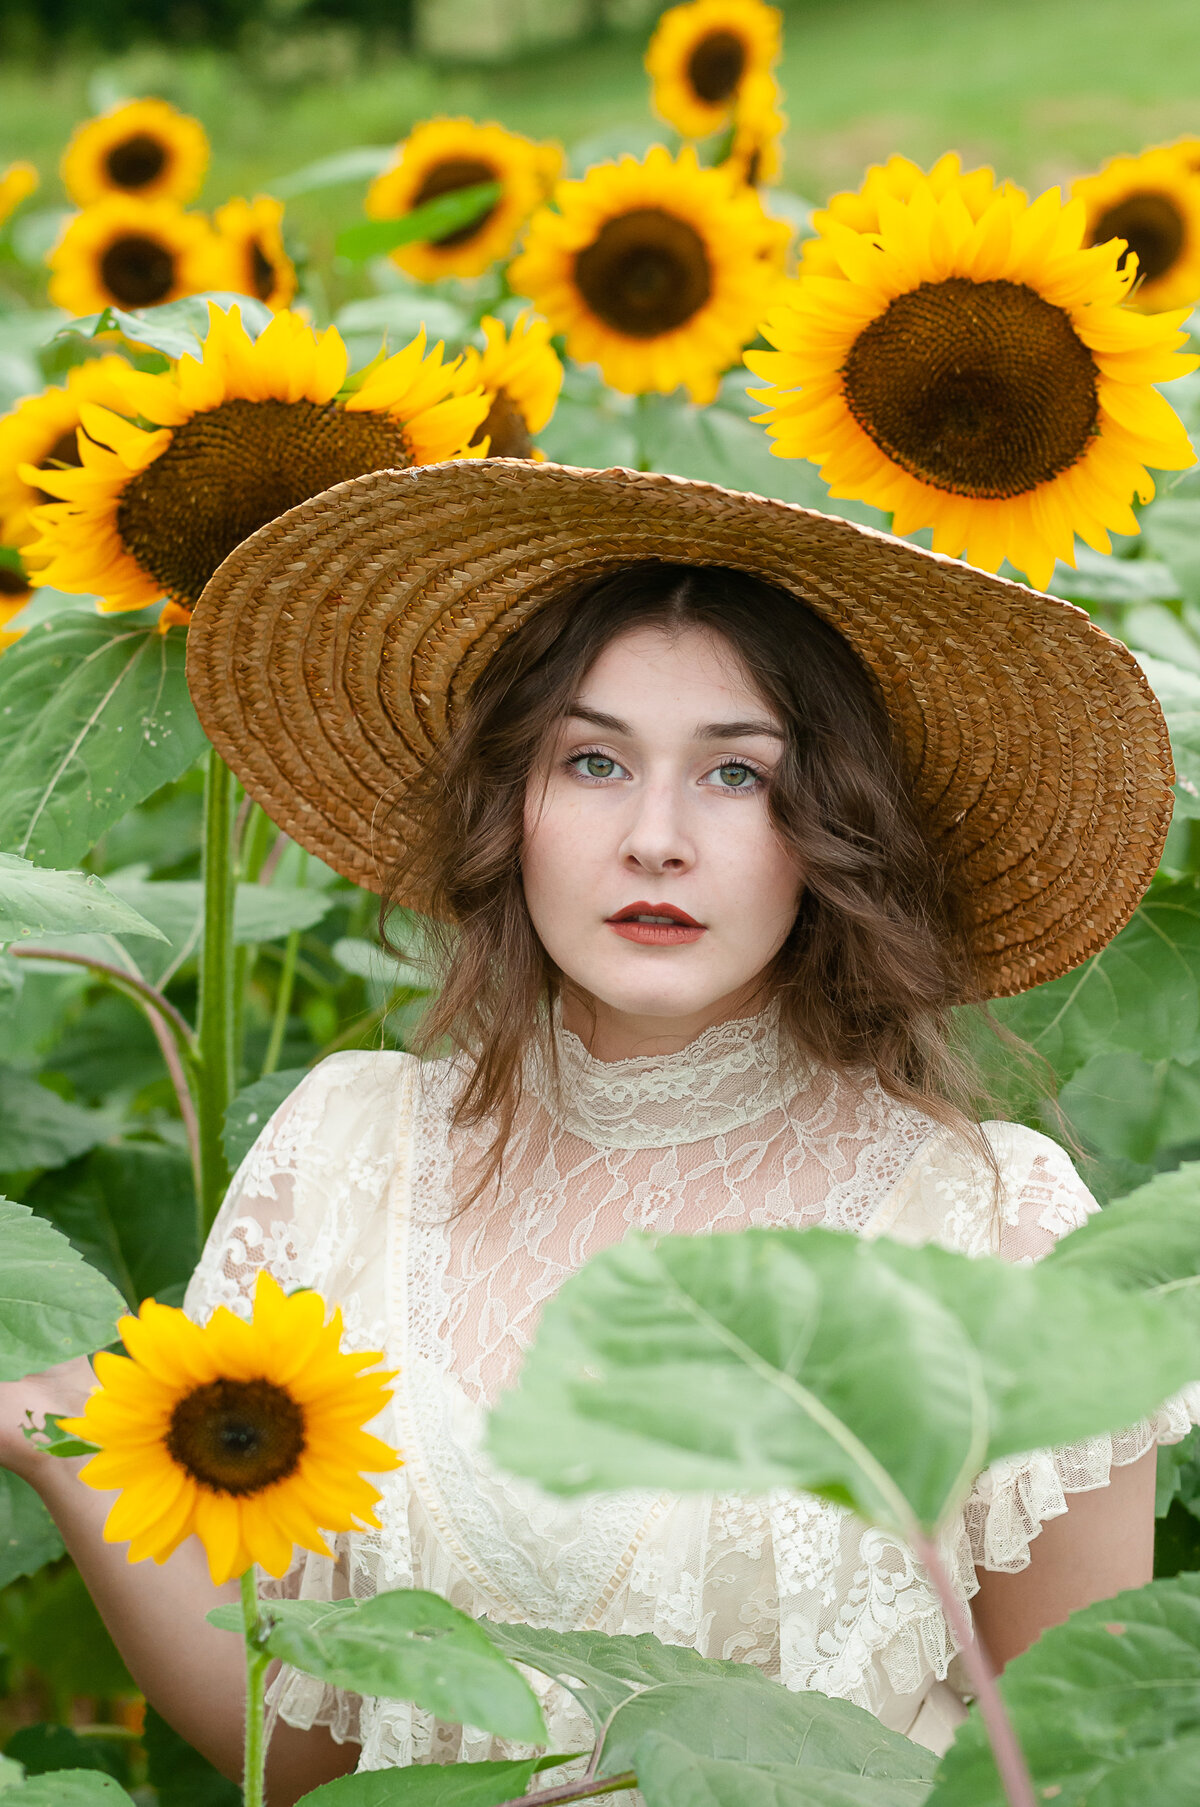 Kentucky Sunflower Photographer: Portrait of a woman in a sunflower field wearing a hat.